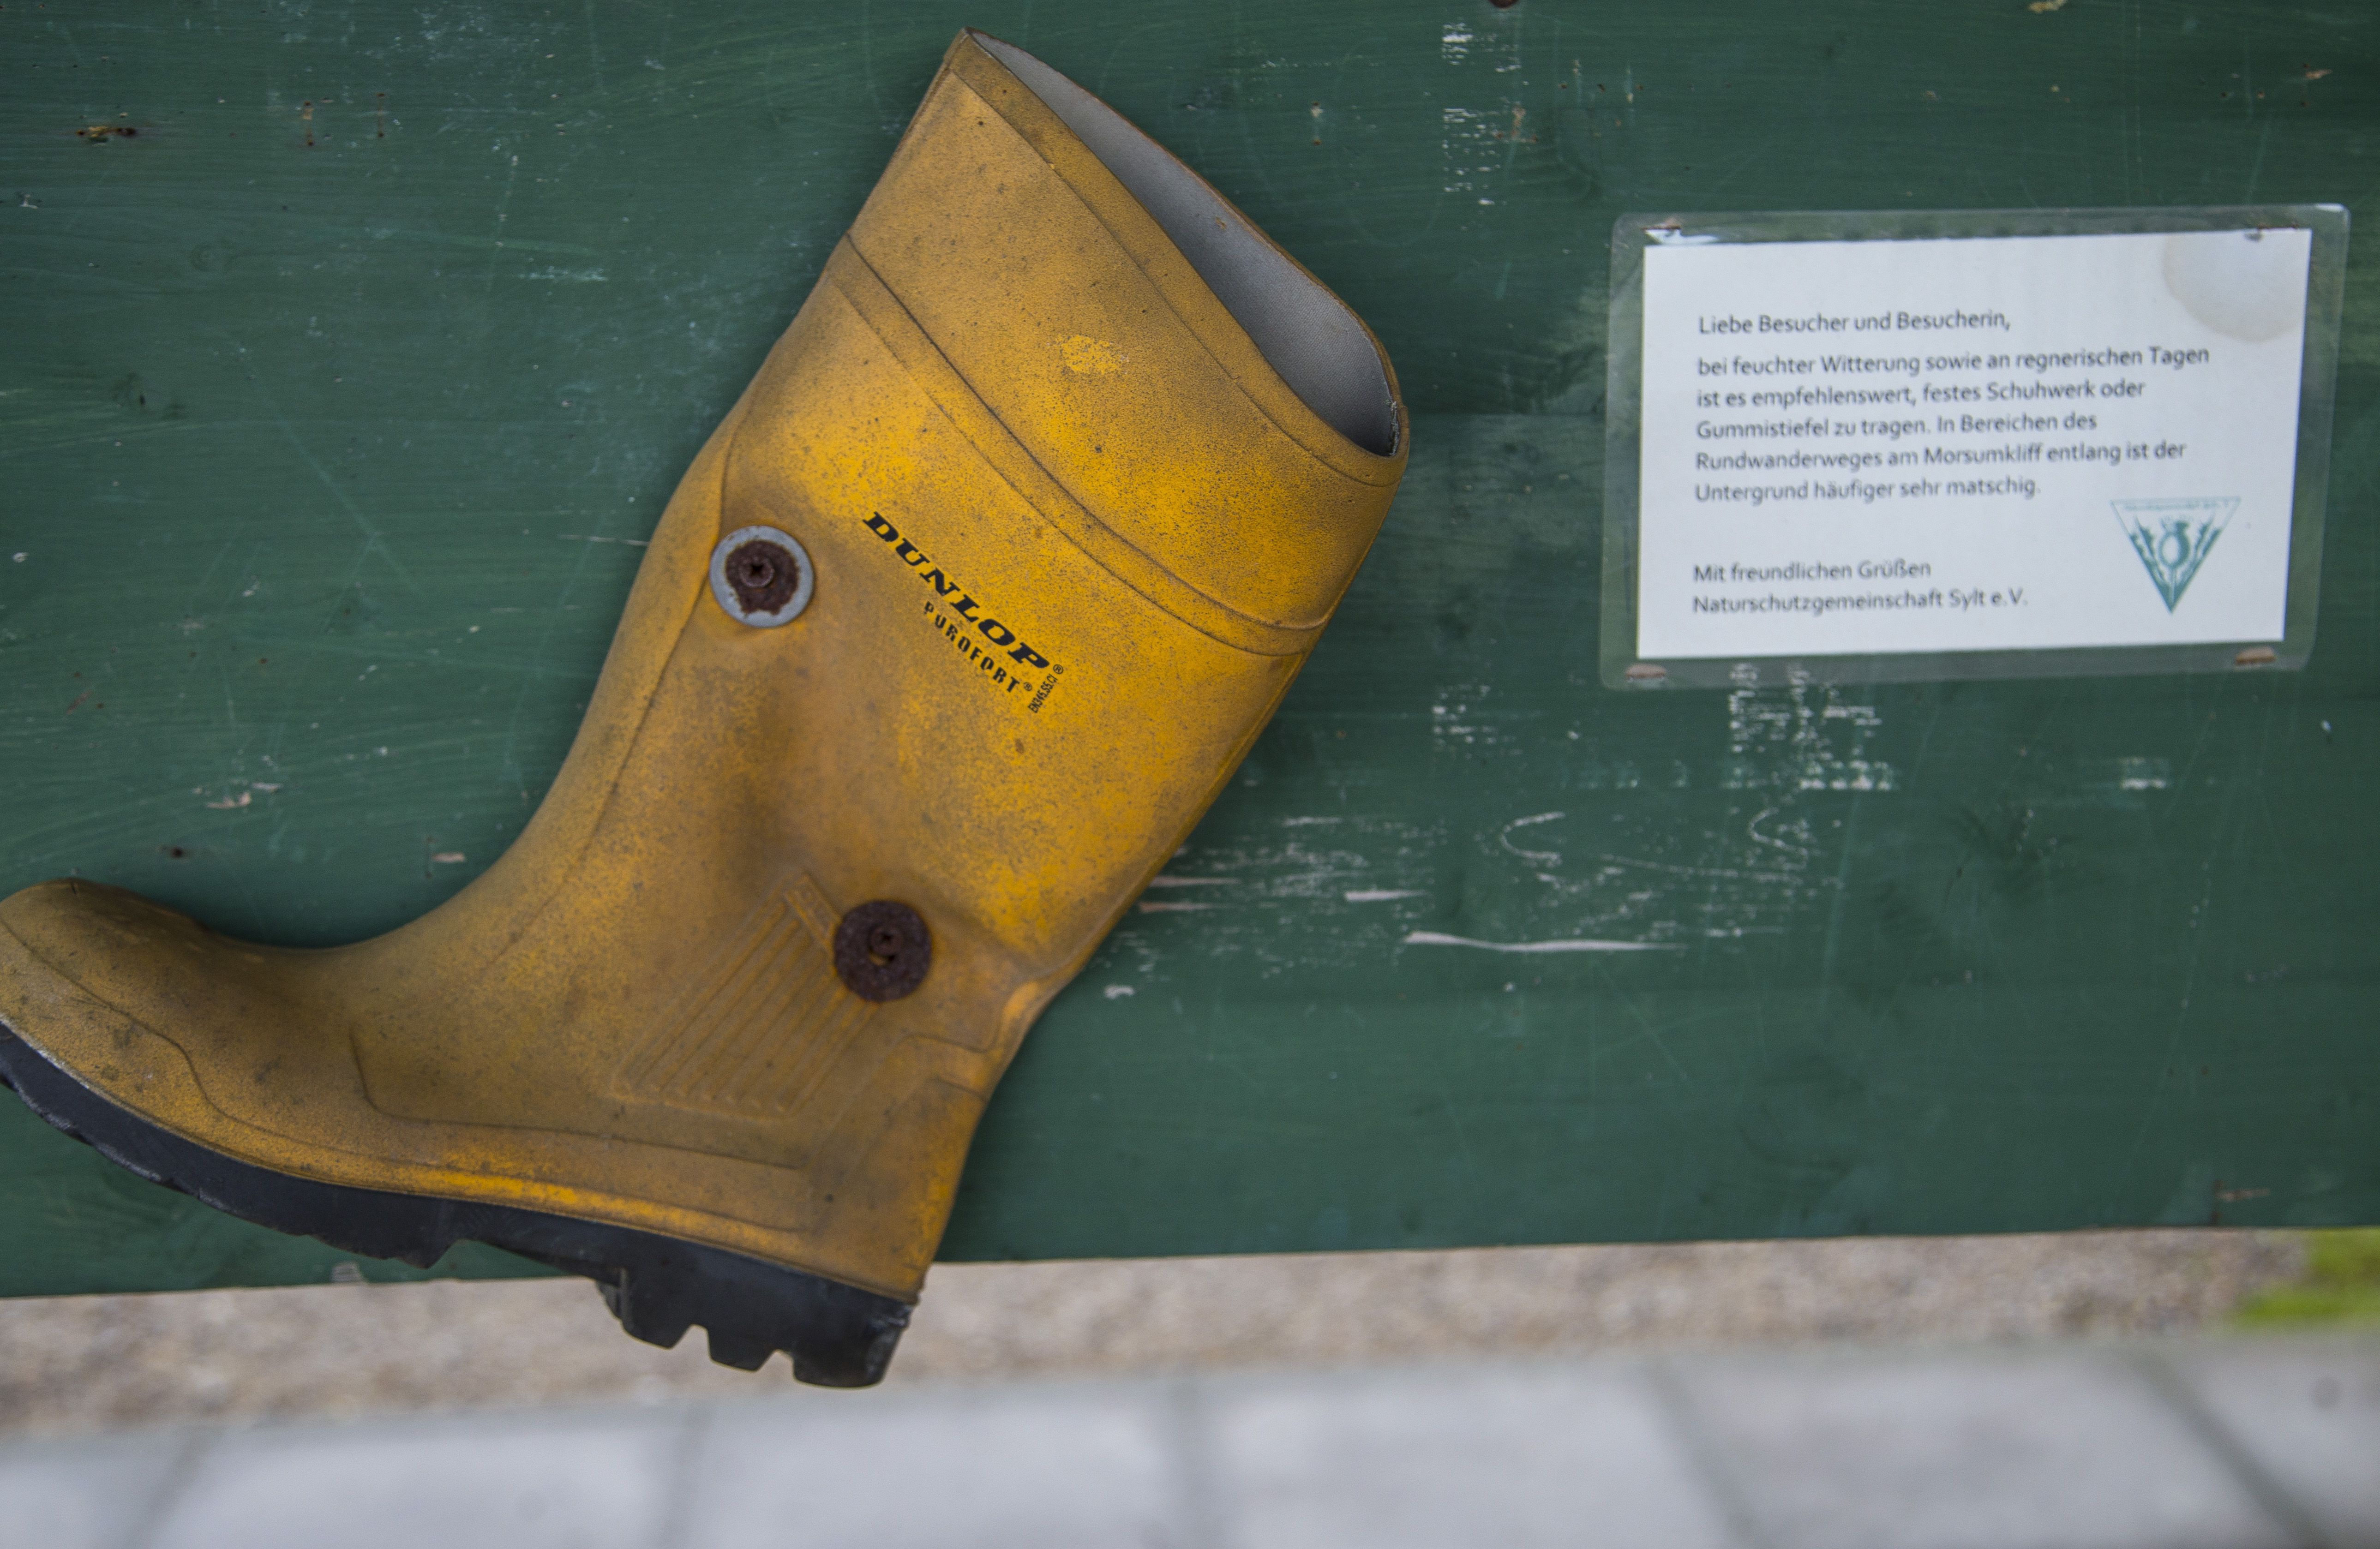 Ein gelber Gummistiefel der Marke Dunlop, an eine grüne Tafel genagelt. Daneben ein Hinweis der Naturschutzgemeinschaft Sylt, den Rundwanderweg am Morsunkliff bei feuchter Witterung vorzugsweise mit Gummistiefeln zu begehen.